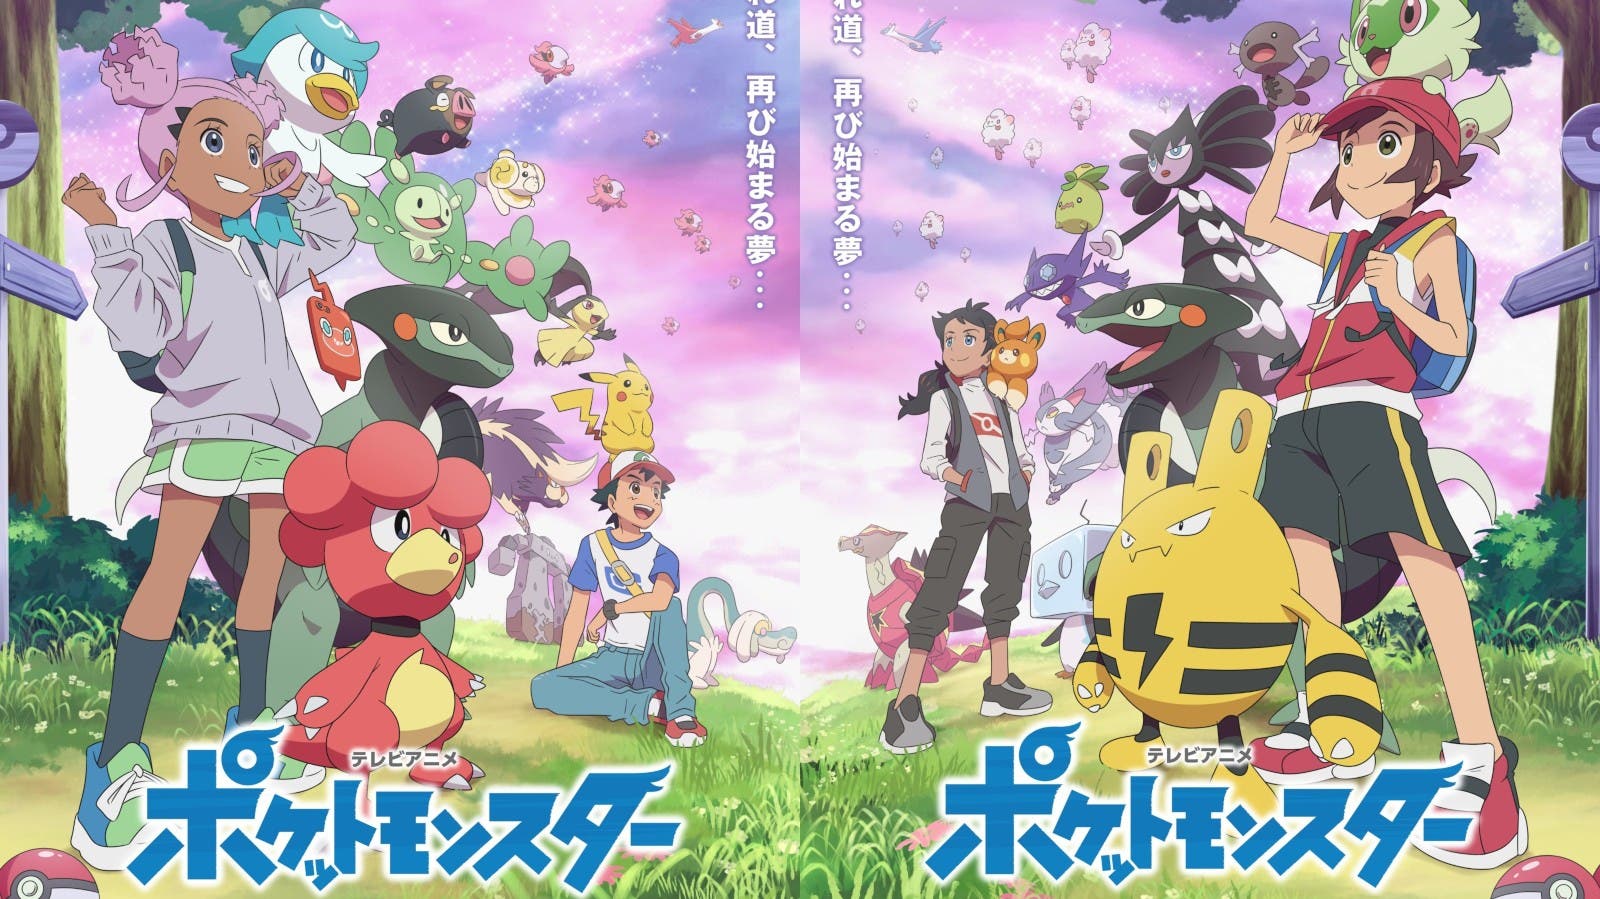 Este fanart imagina cómo será el siguiente anime de Pokémon con Ash de mayor